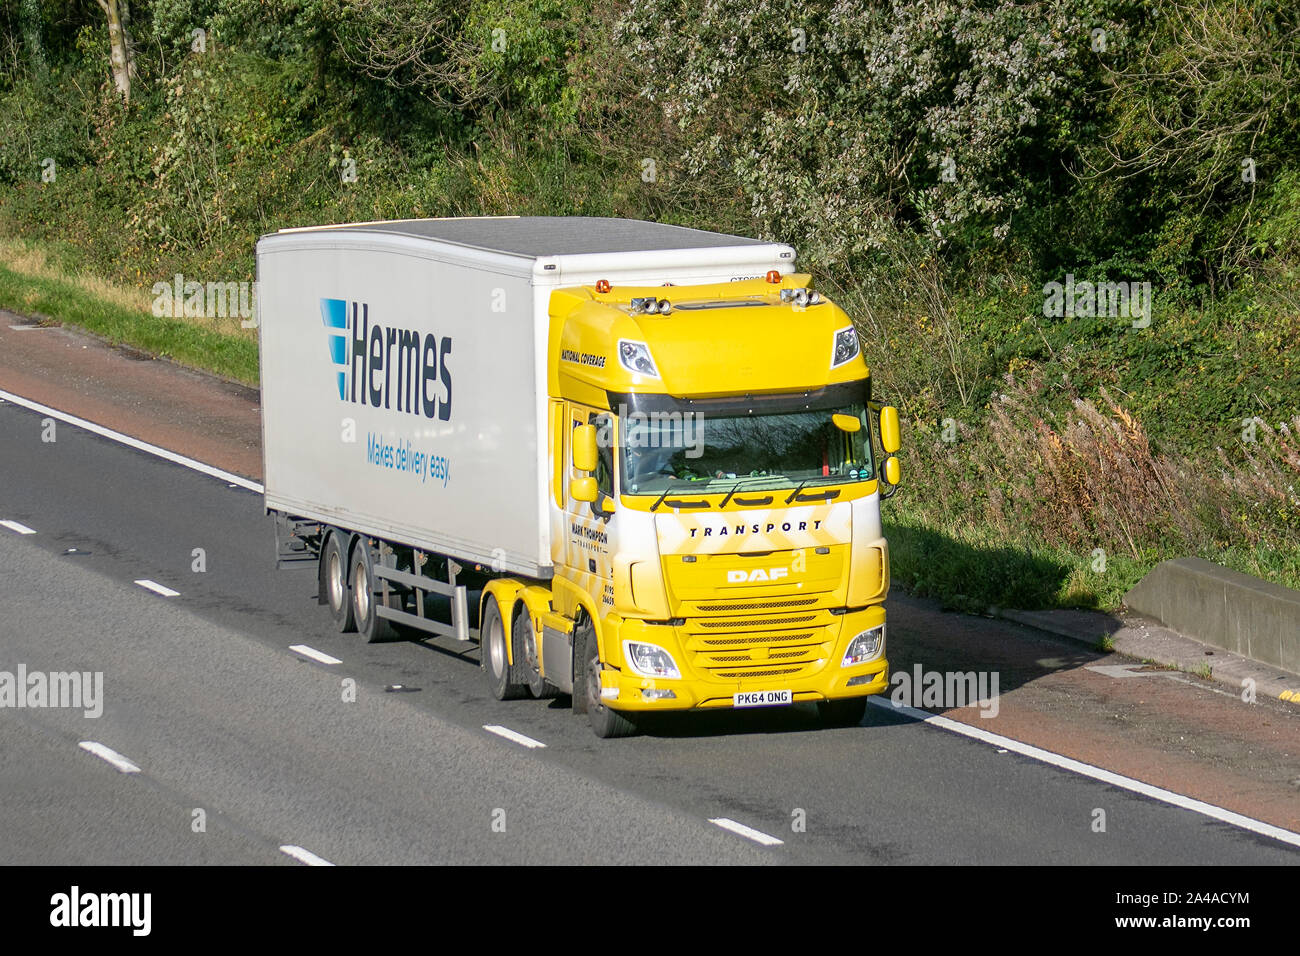 M6, Lancaster, UK ; transport par Hermes rend facile livraison dit slogan  publicitaire ; Camion Camion Poids Lourds La circulation routière,  transports, moderne, vers le nord sur la voie 3 de l'autoroute